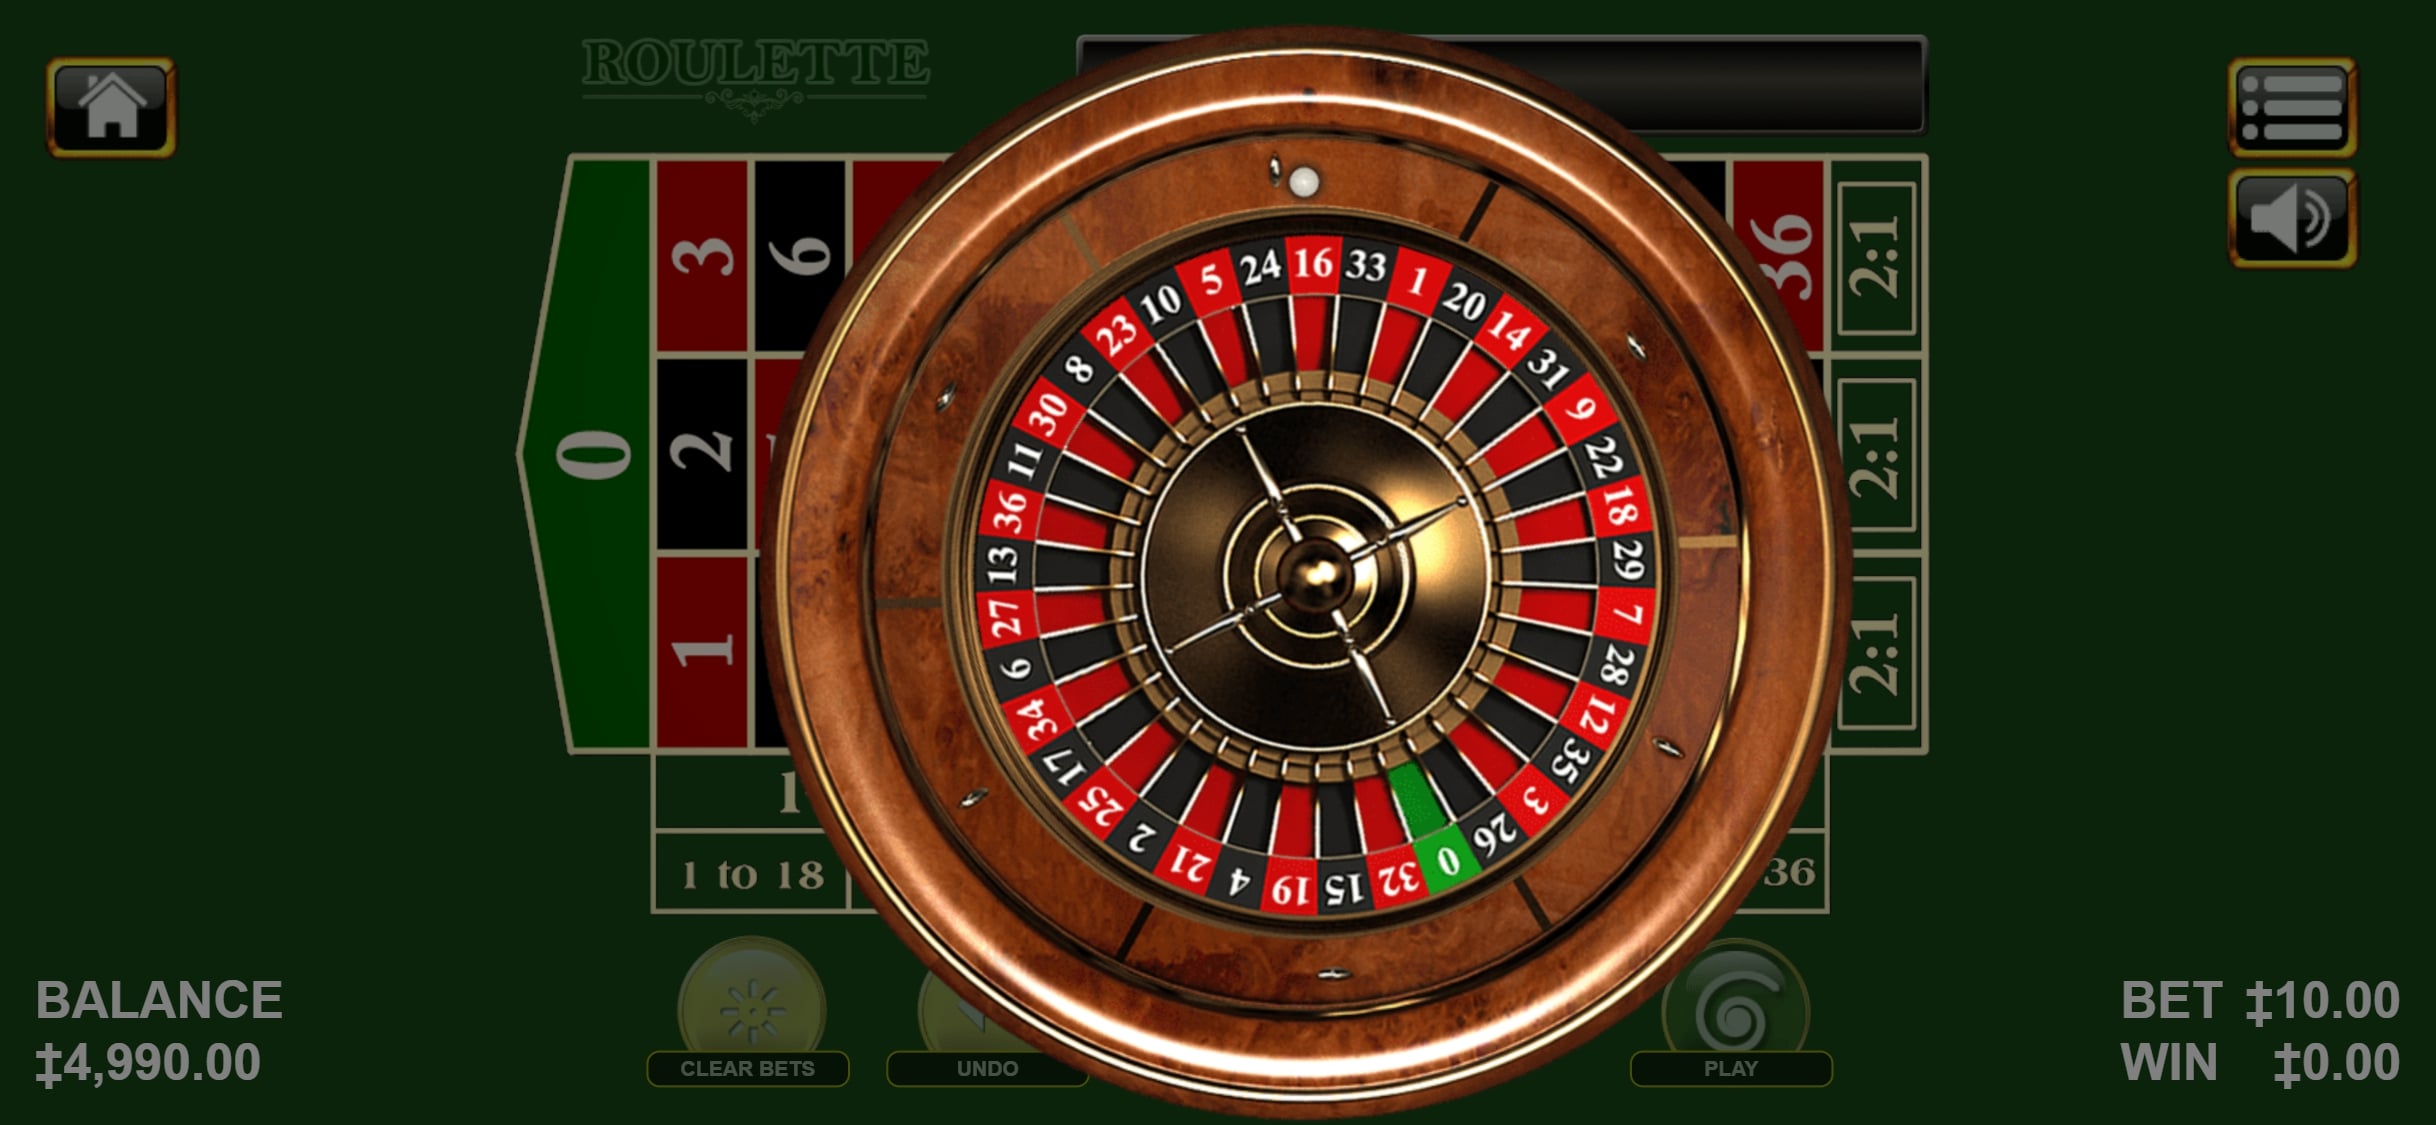 Cleopatra Casino Mobile Casino Games Review